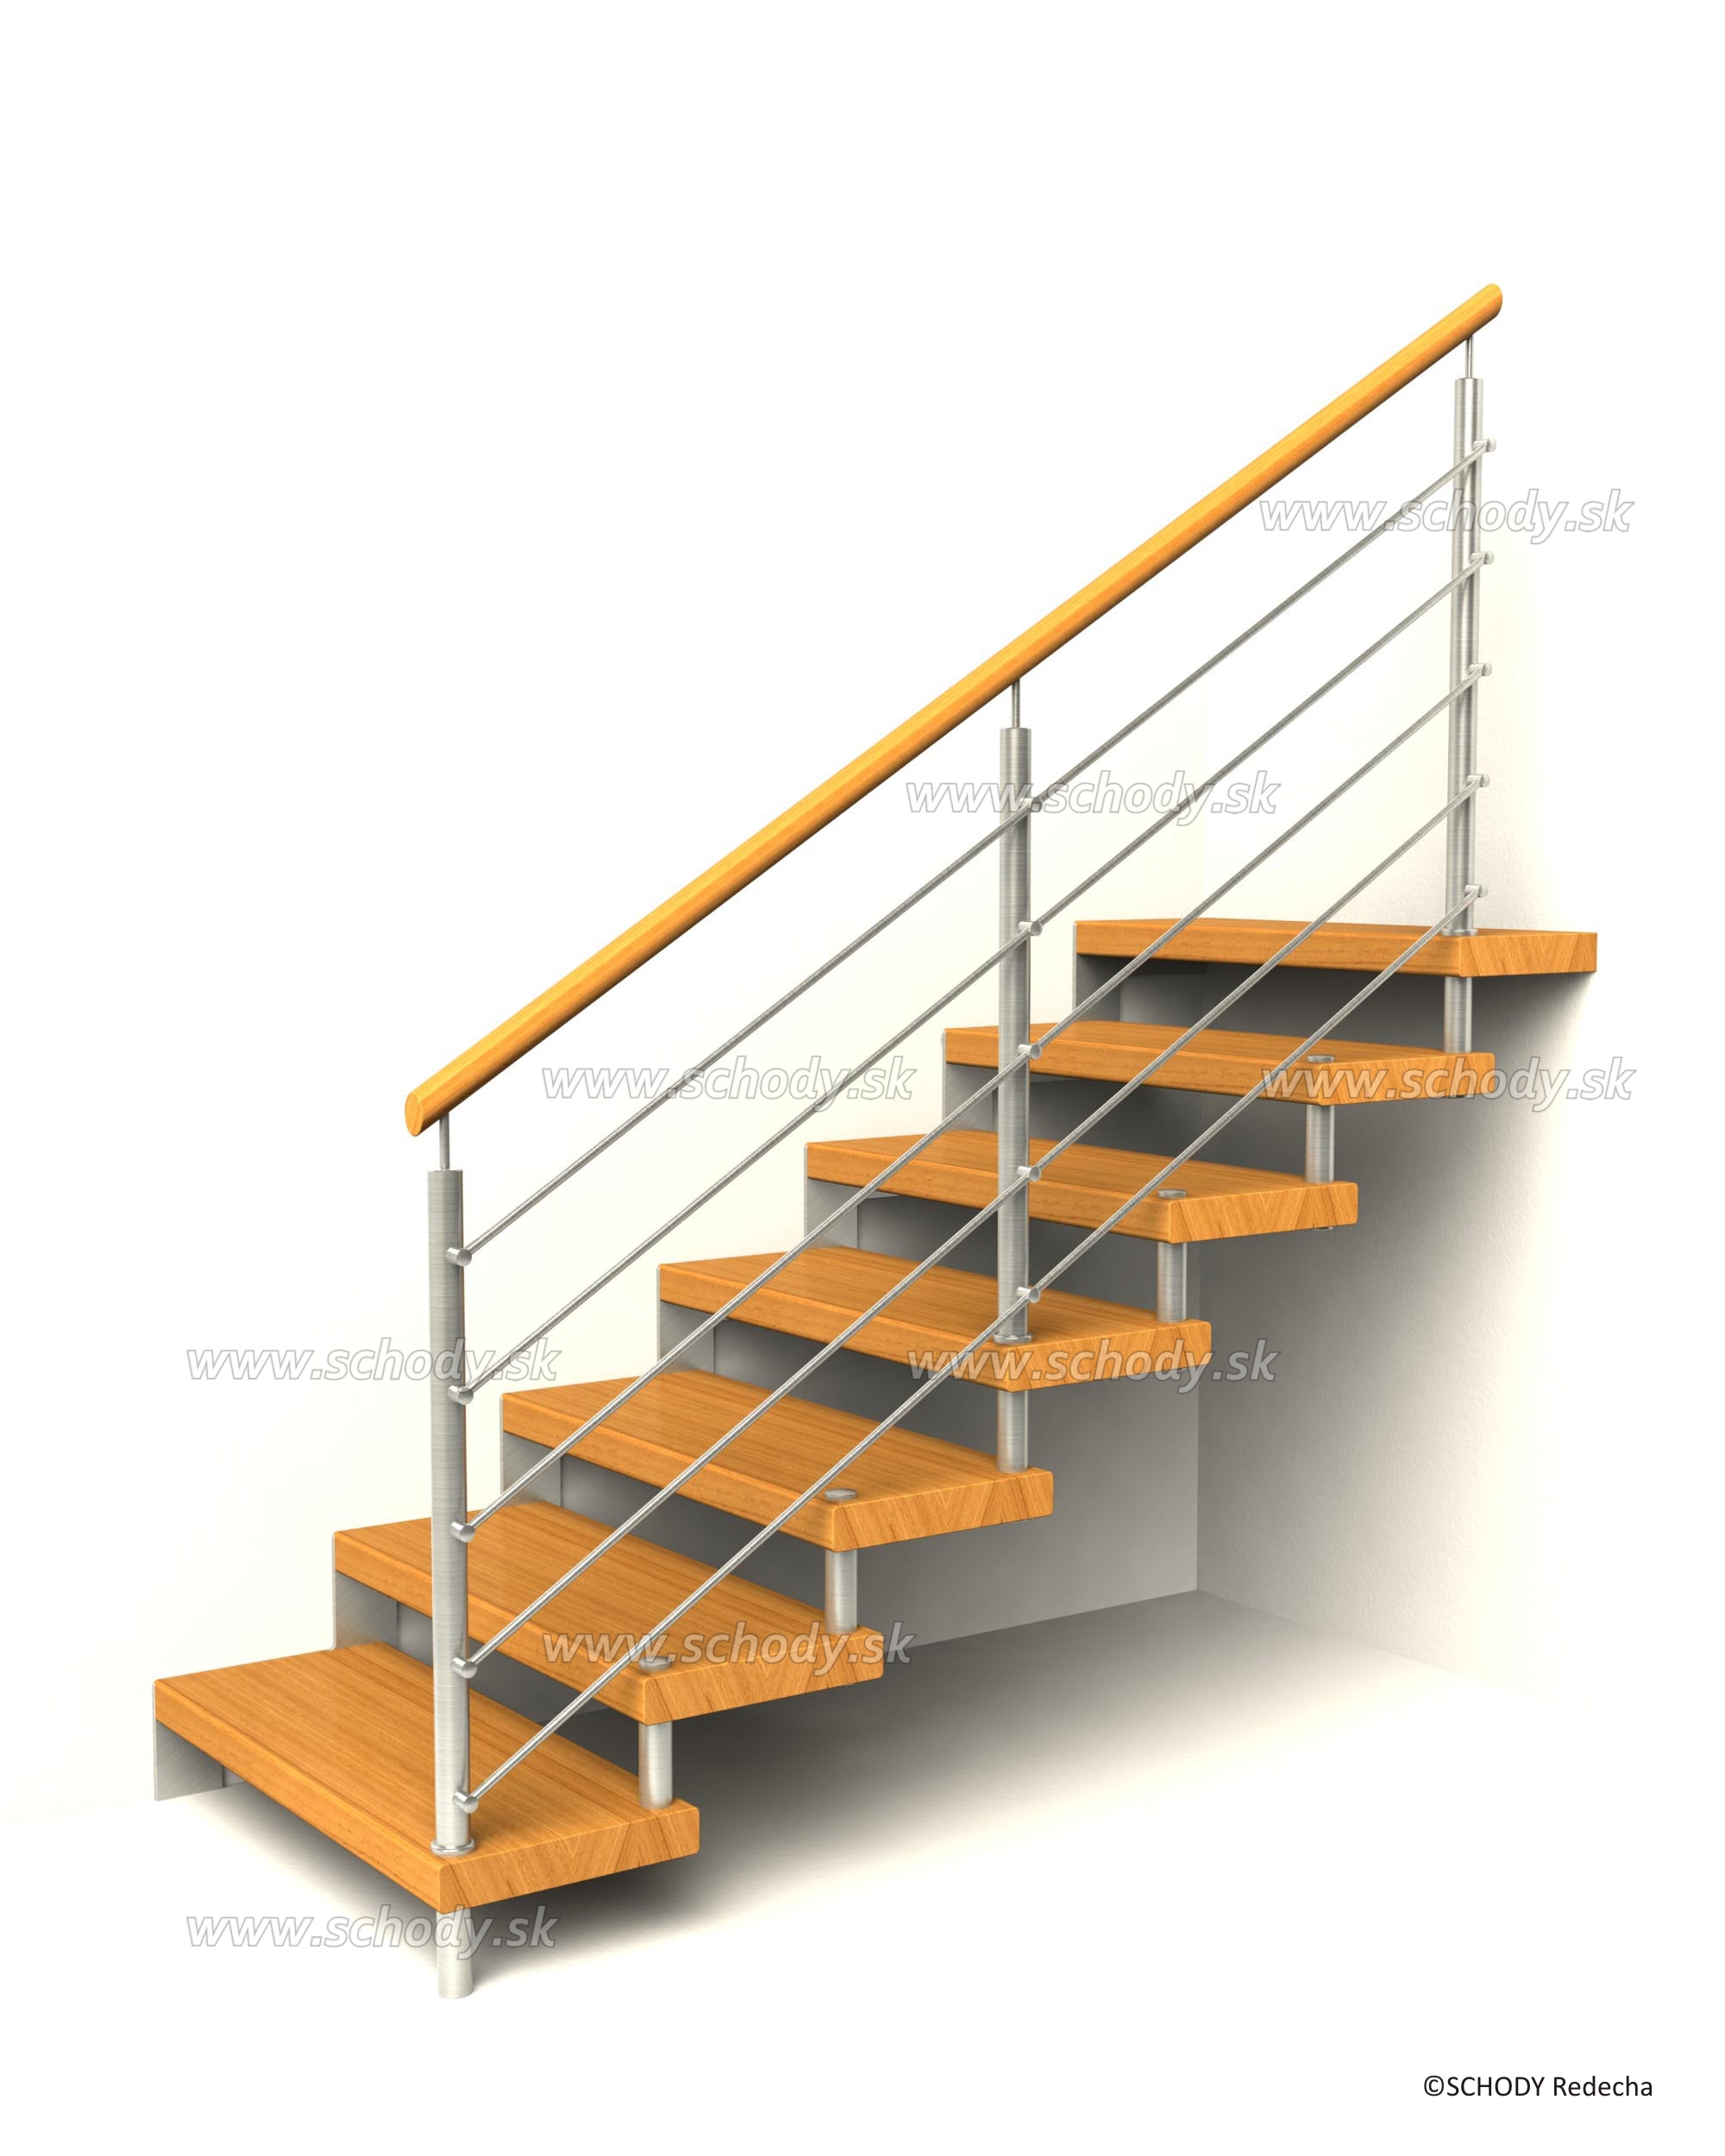 svornikova schodiste schody VIII22D1